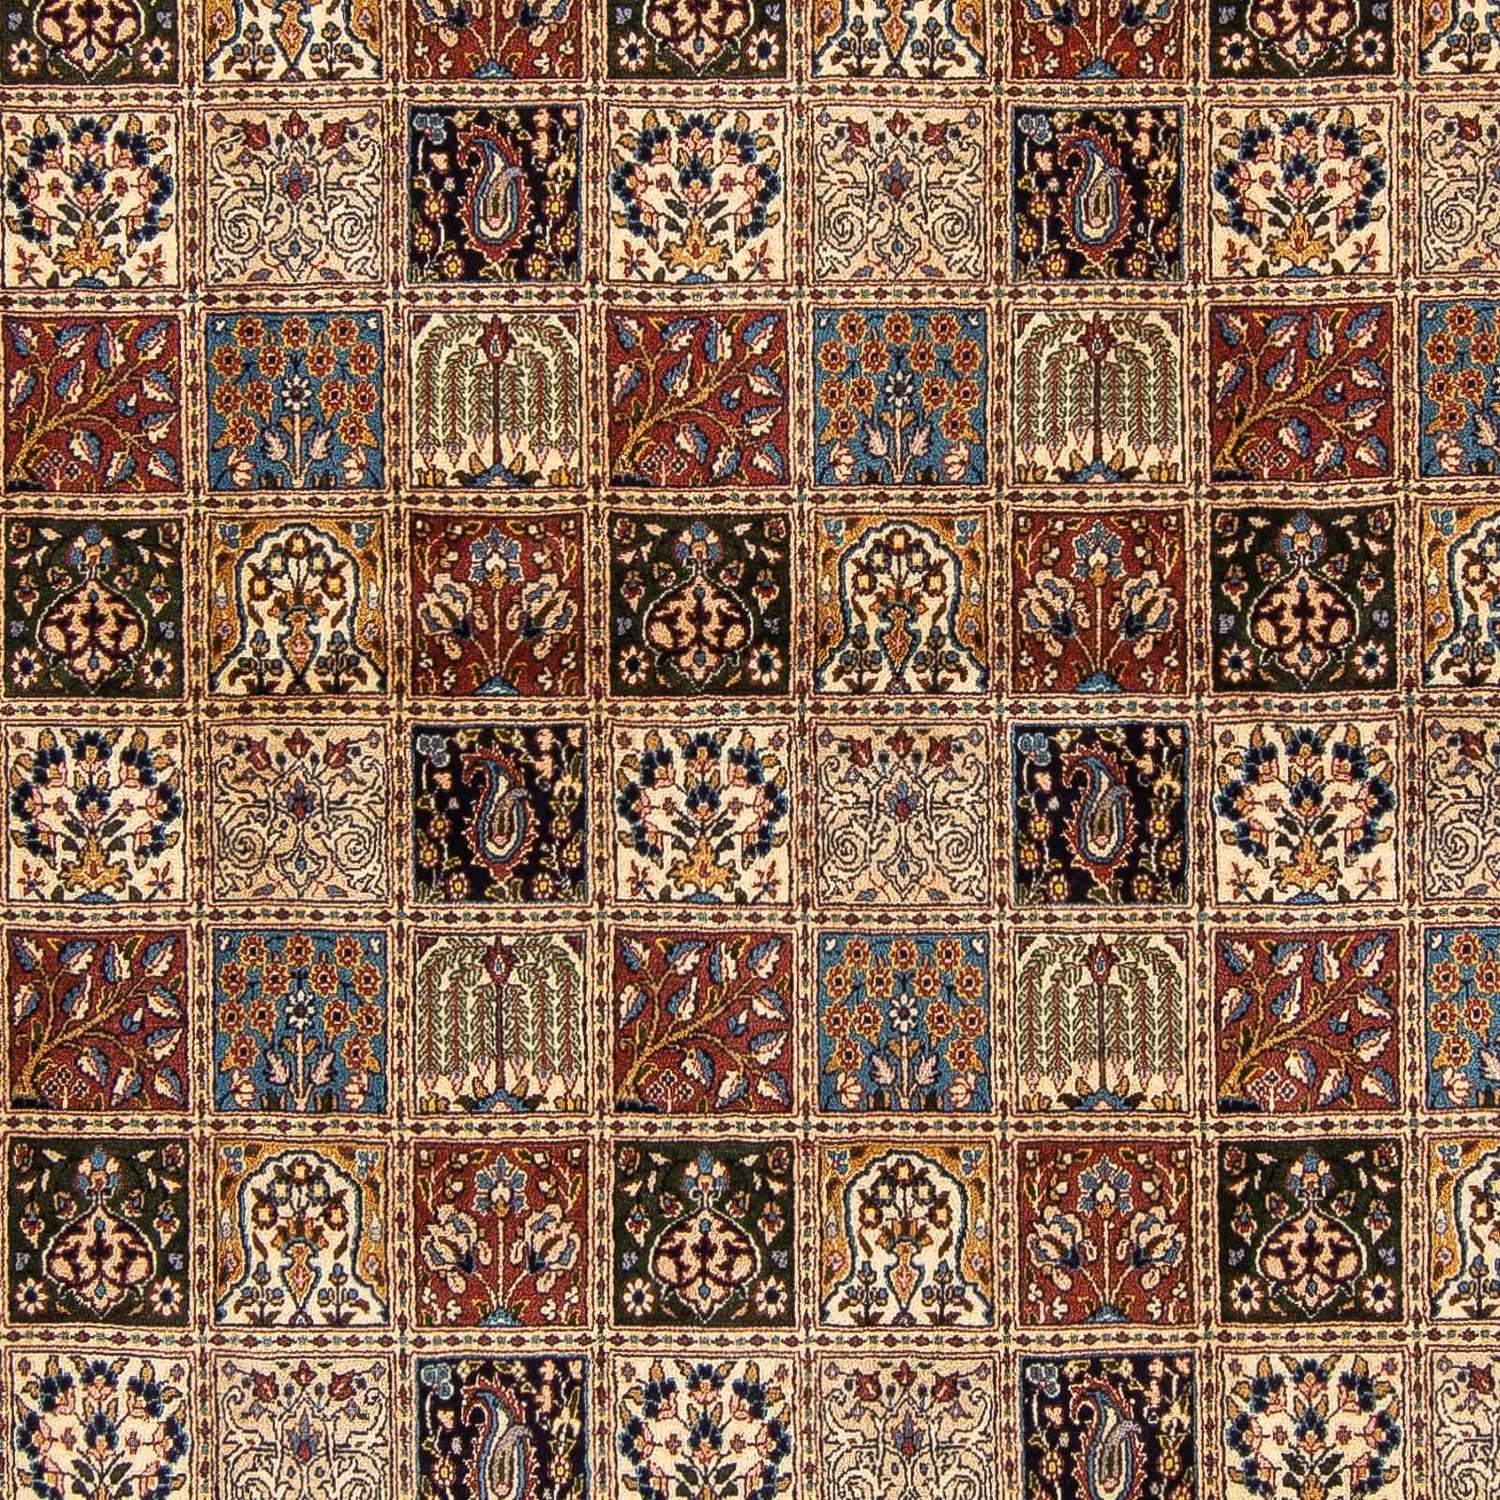 Tapis persan - Classique carré  - 248 x 245 cm - multicolore